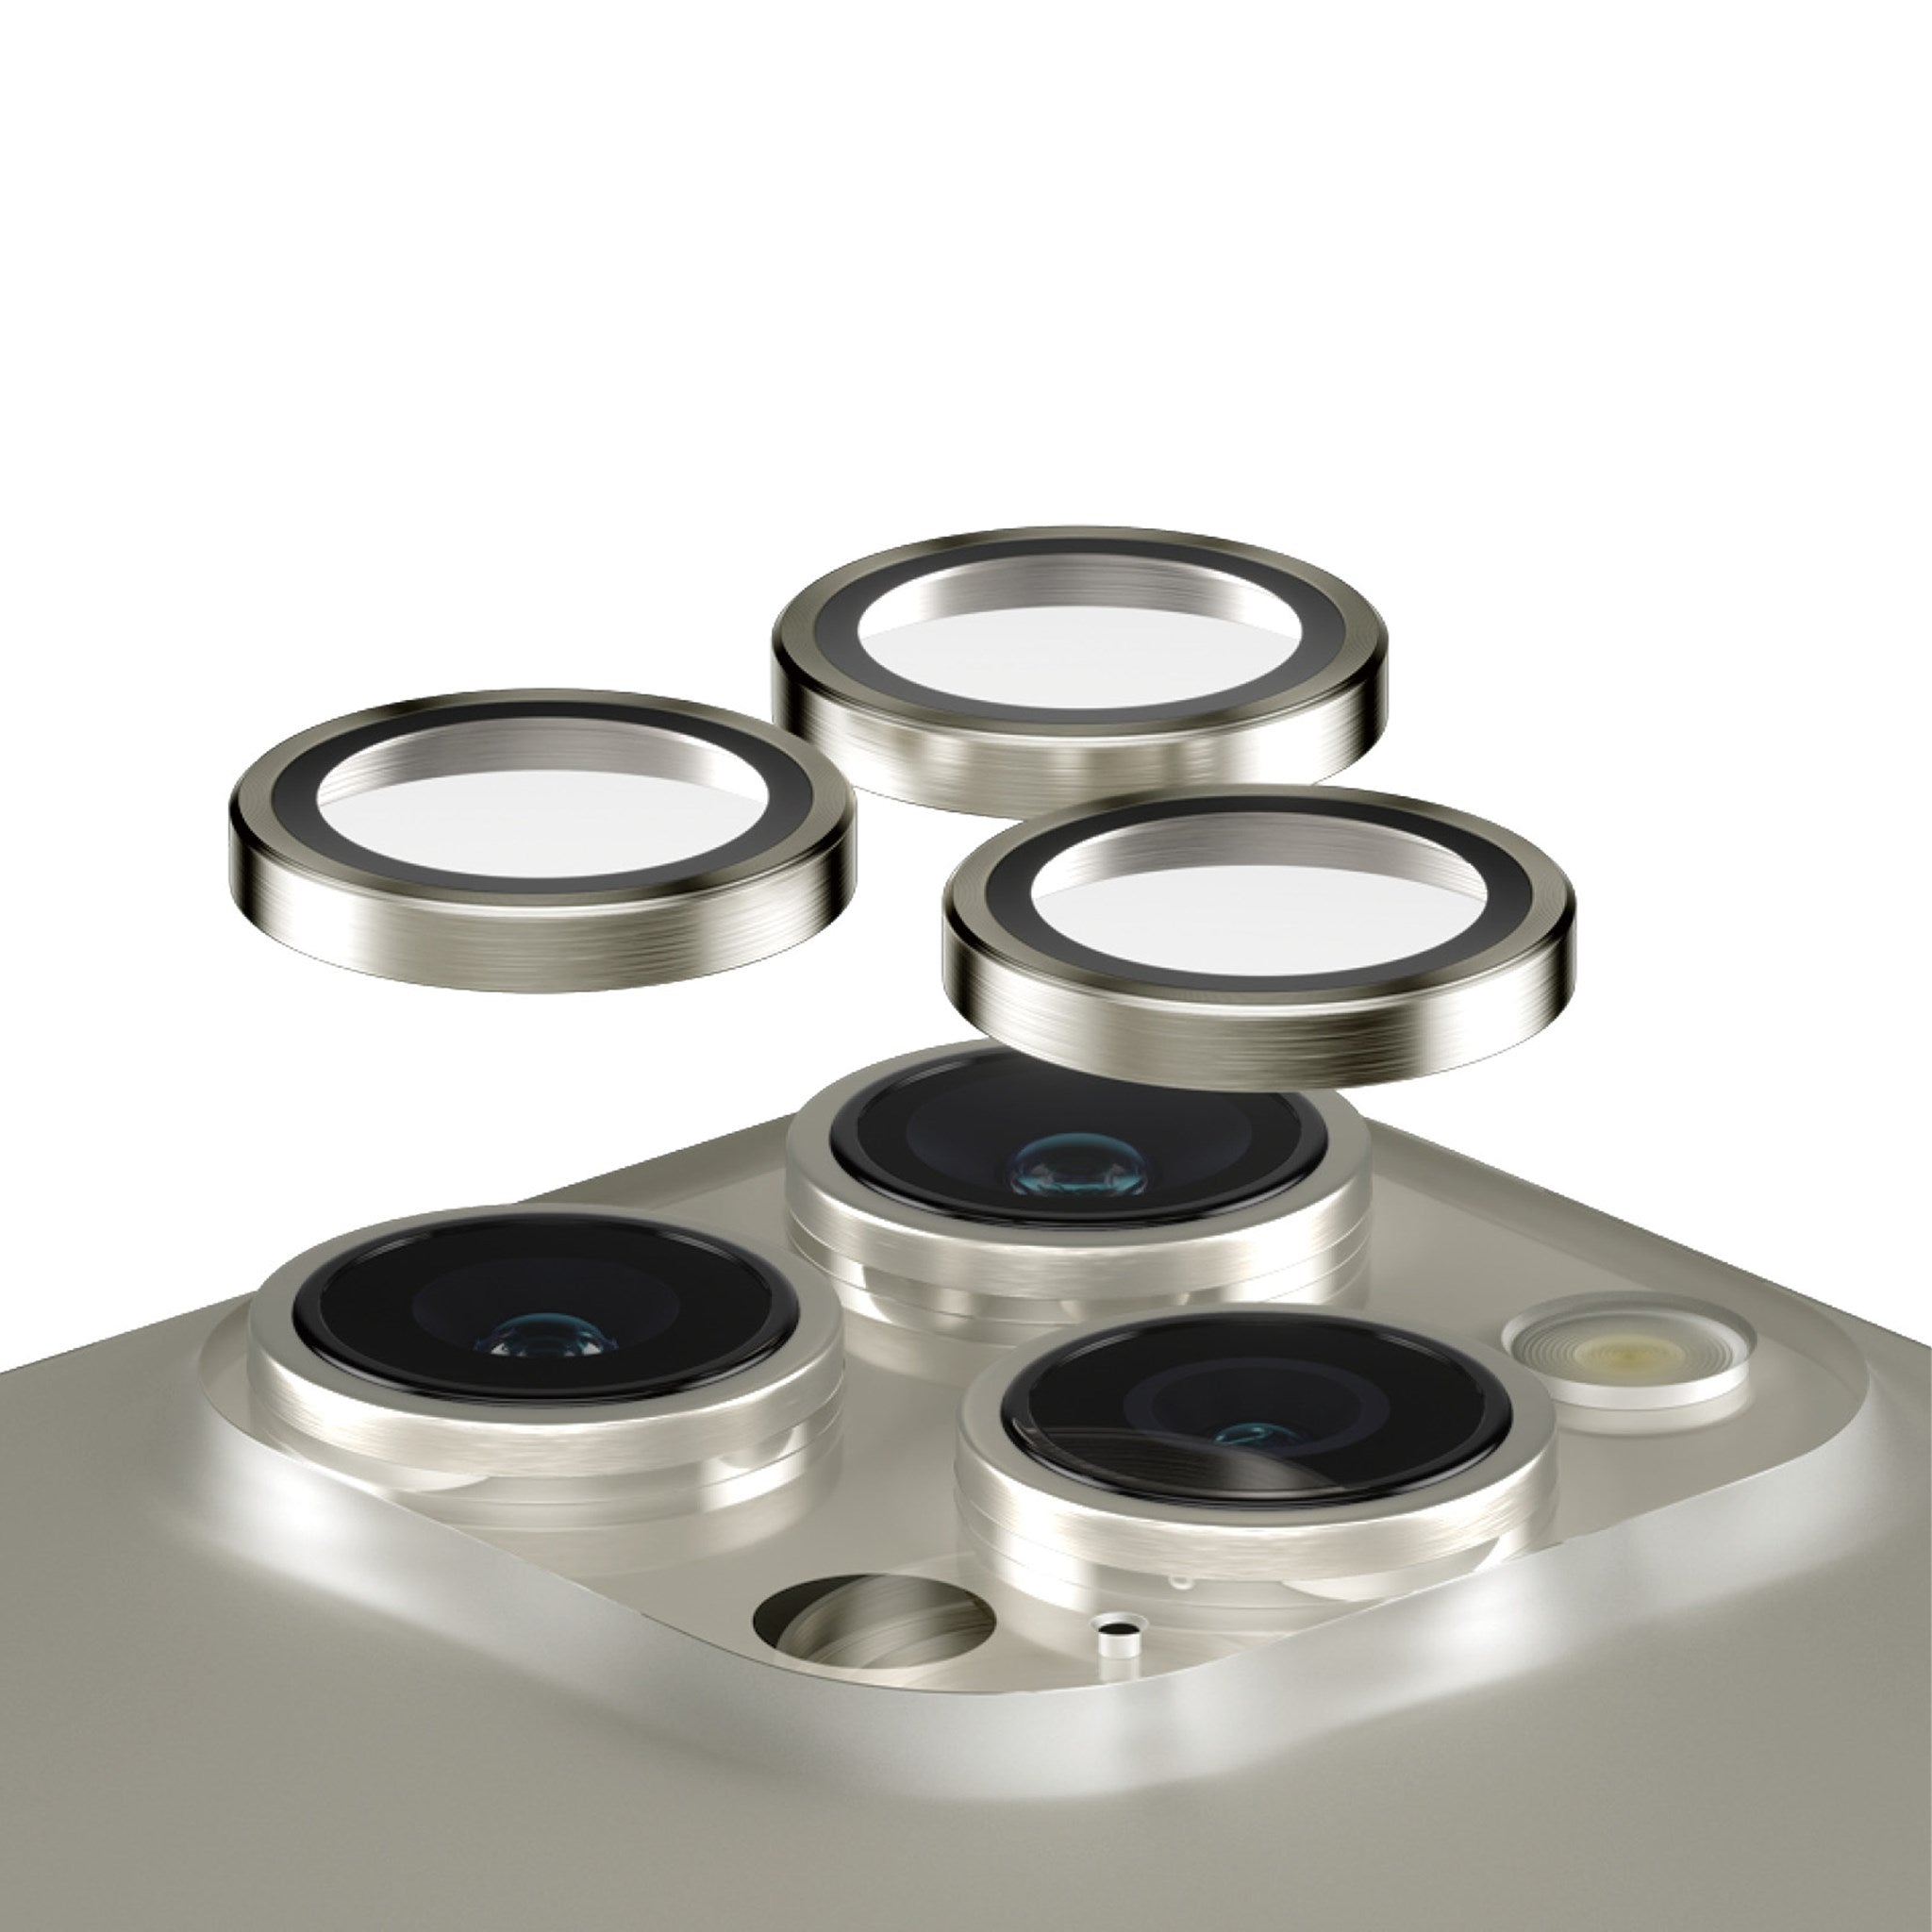 PANZERGLASS Hoops™ 15 Max) Pro | 15 | Natürliches Kameraschutz(für Apple Pro Metall iPhone Kameraschutz